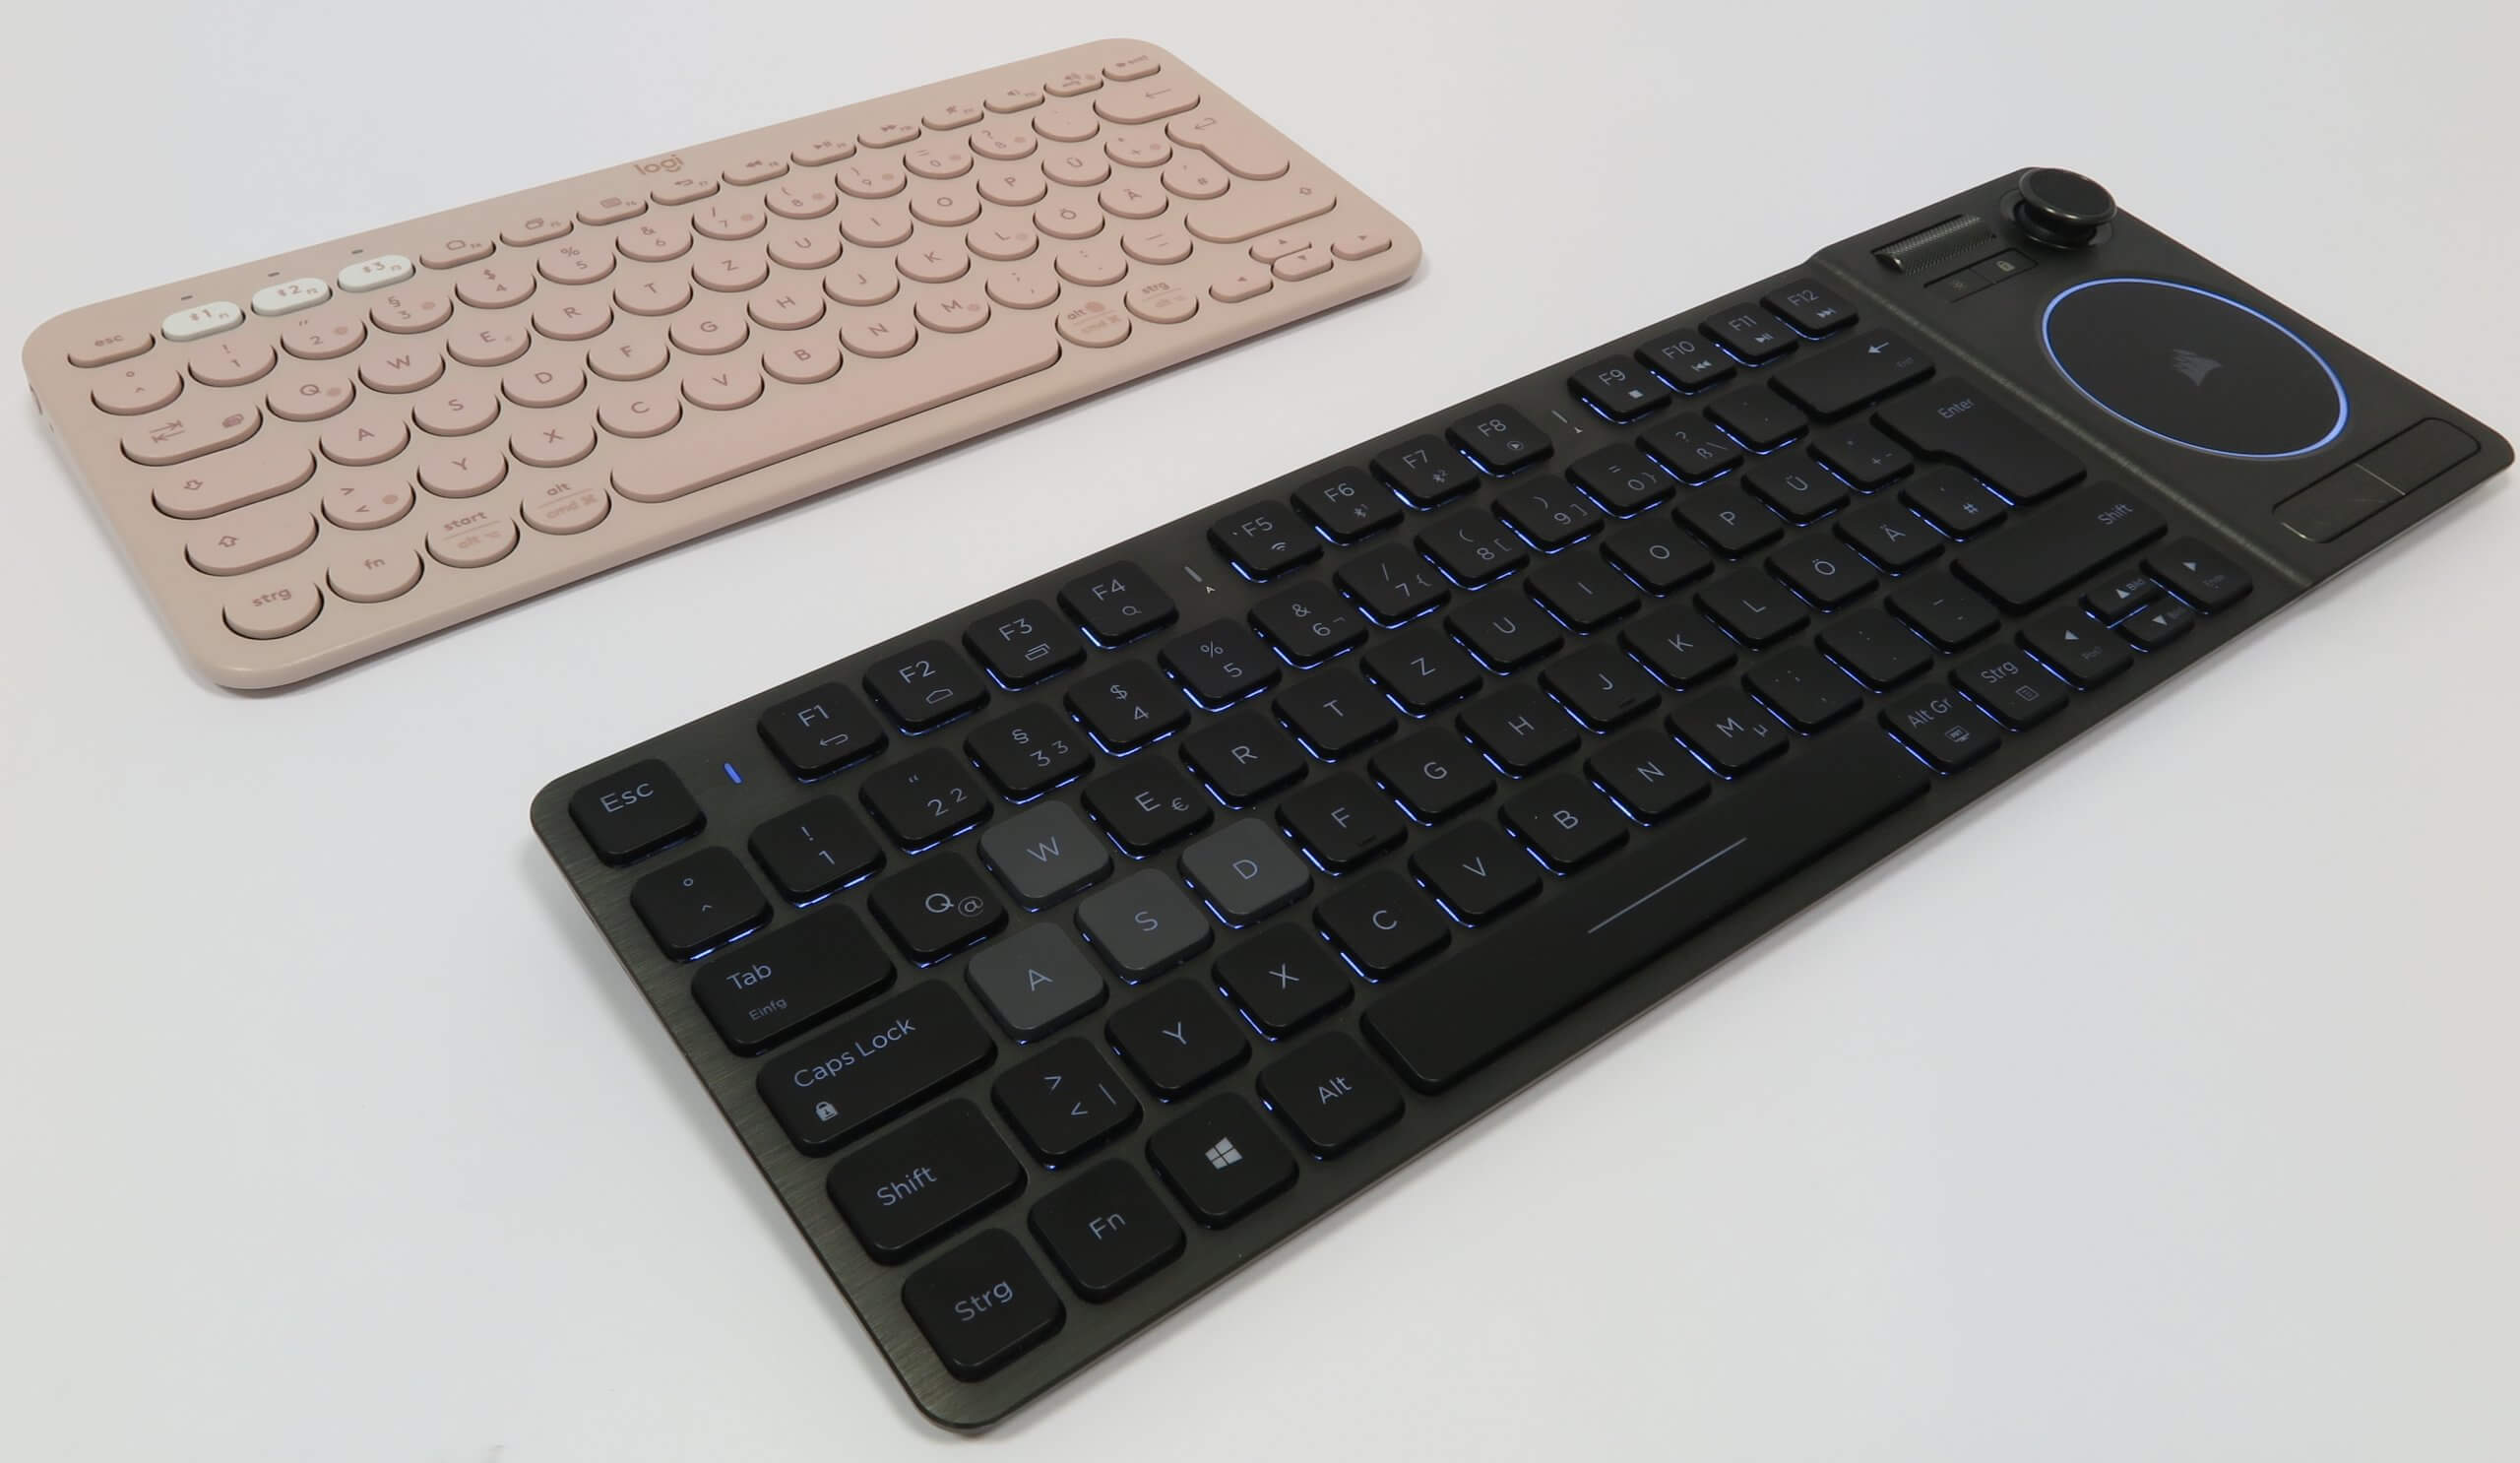 Zwei sehr flache Bluetooth-Tastaturen, eines ins Rosa, eines in Schwarz, mit unterschiedlichen Größen im Vergleich.